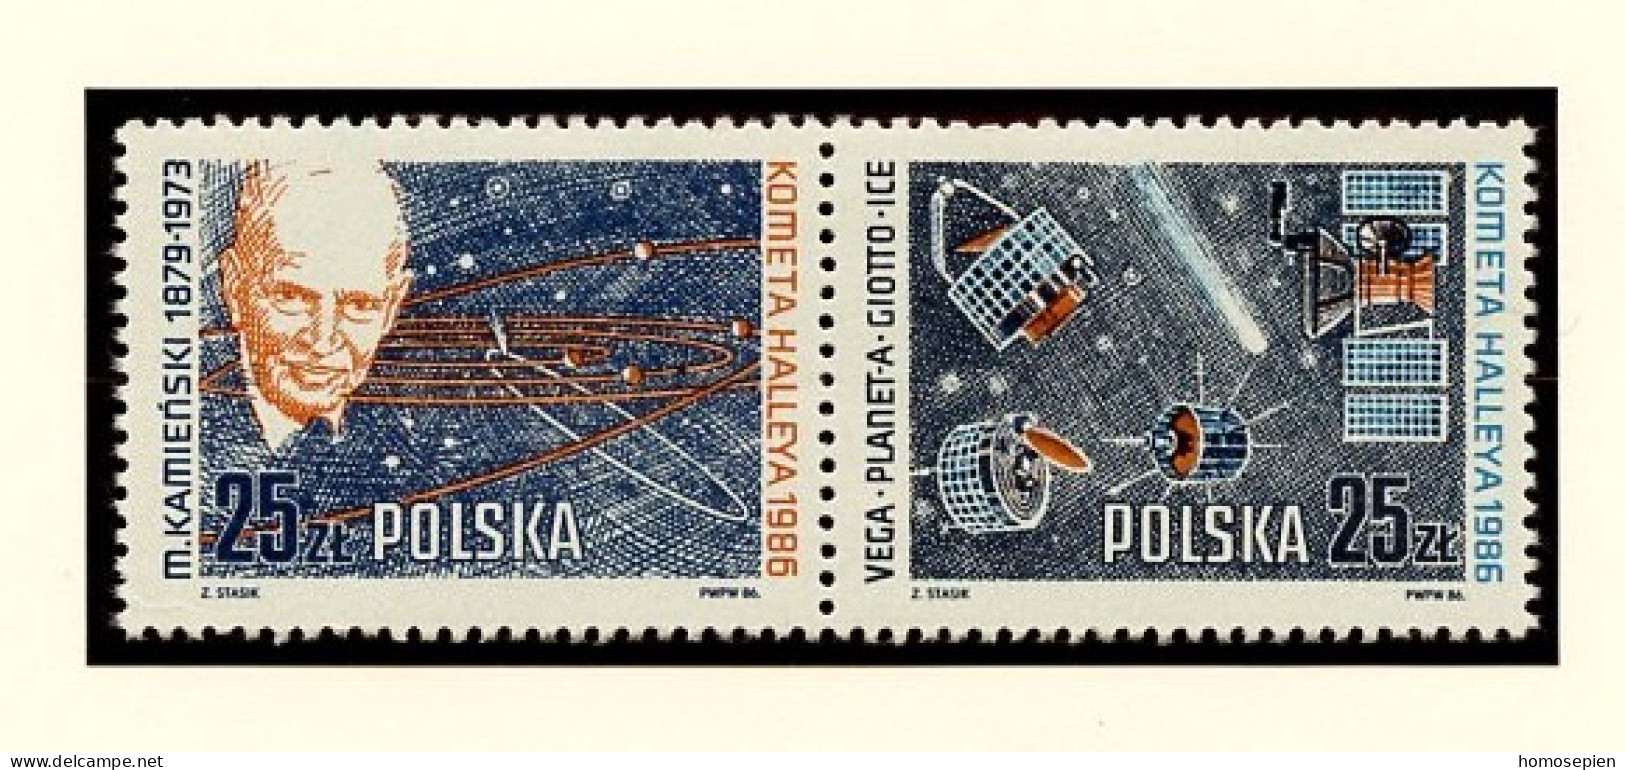 Pologne - Poland - Polen 1986 Y&T N°2824 à 2825 - Michel N°3014 à 3015 *** - Comète De Halley - Se Tenant - Nuovi